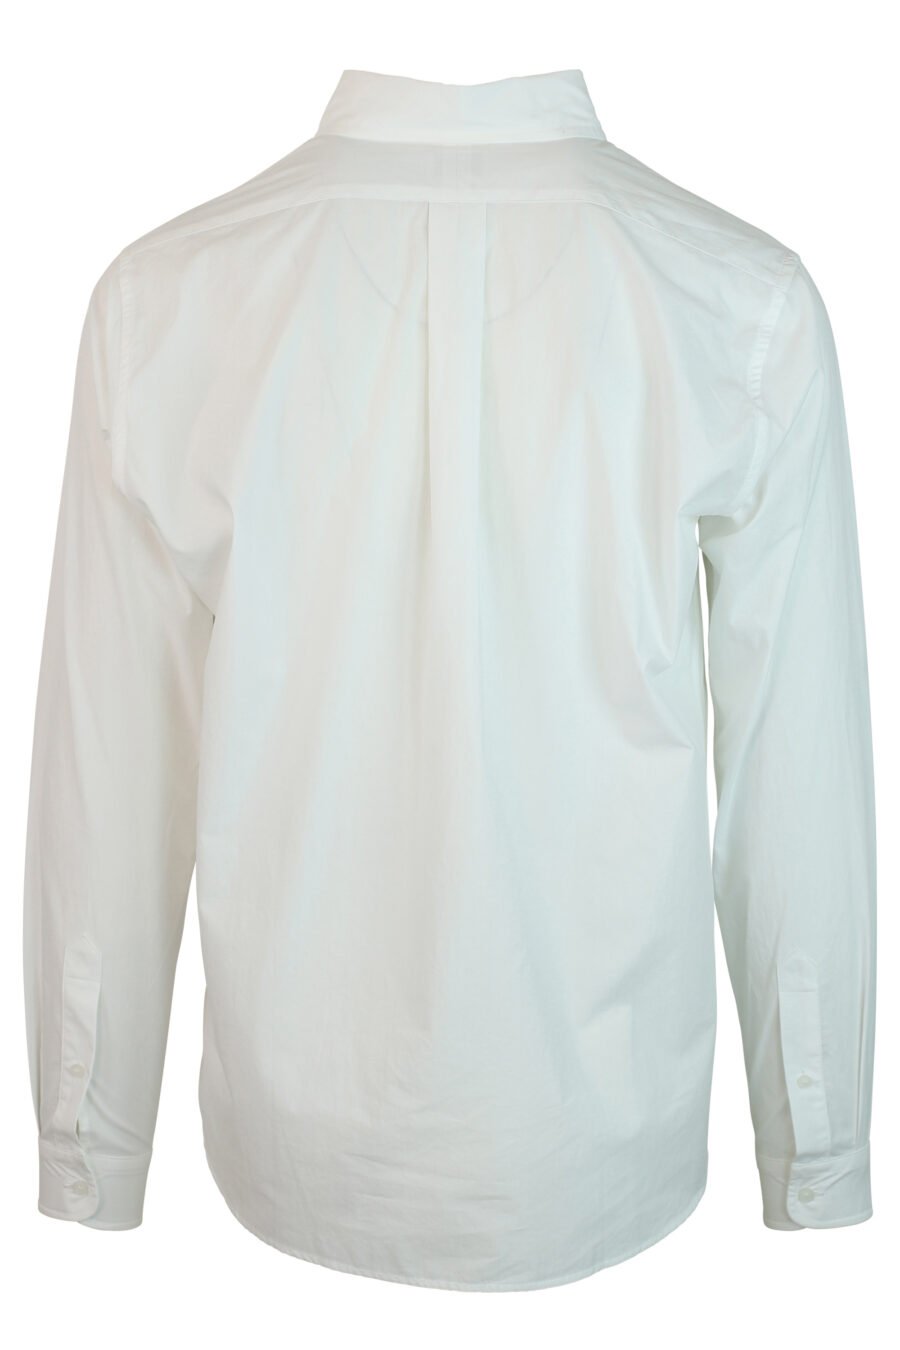 Camisa branca com mini logótipo "boke flowers" - 3612230406605 2